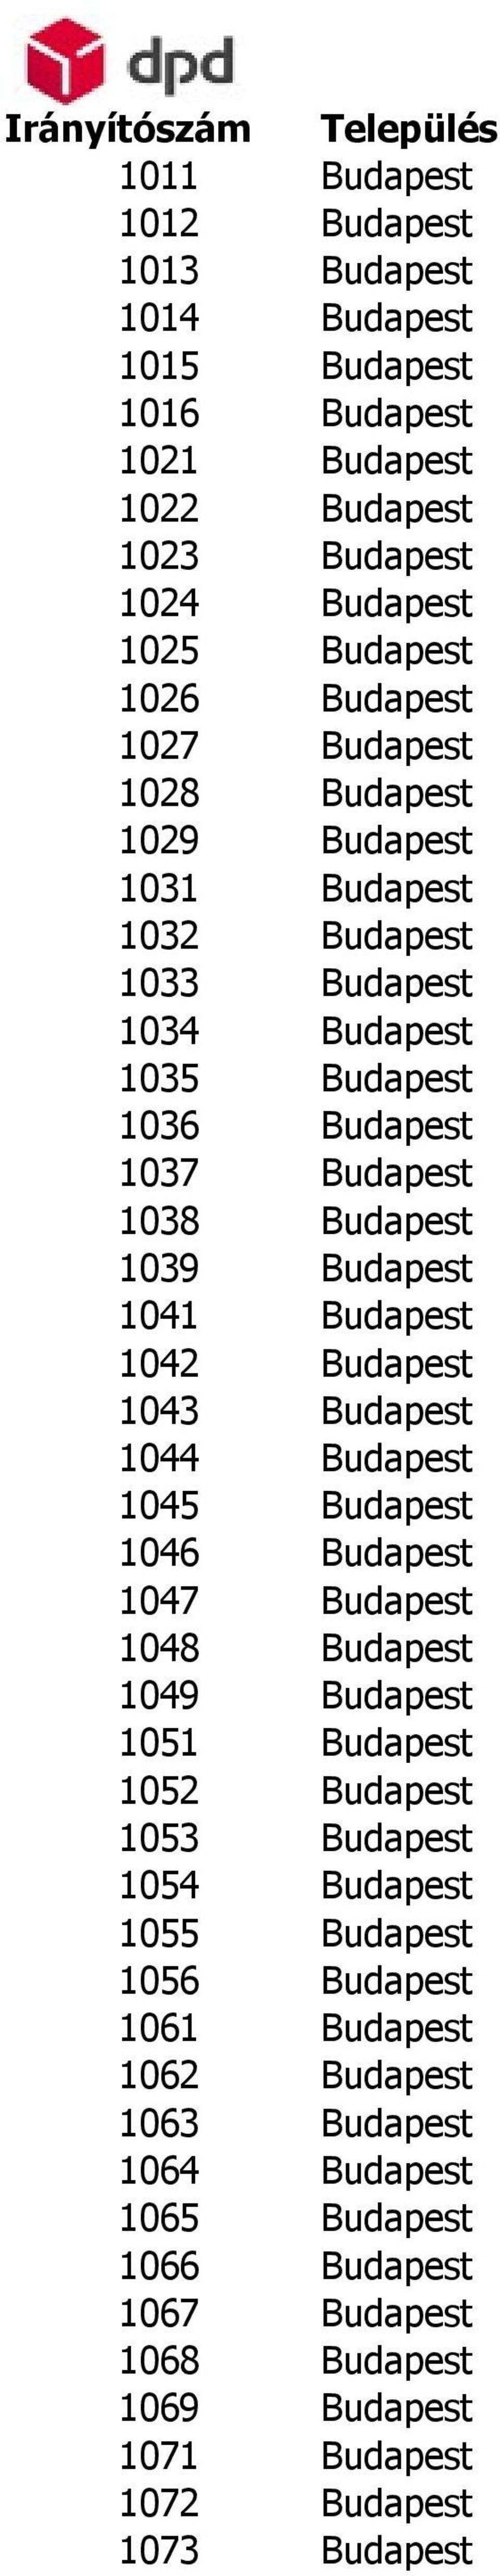 Budapest 1042 Budapest 1043 Budapest 1044 Budapest 1045 Budapest 1046 Budapest 1047 Budapest 1048 Budapest 1049 Budapest 1051 Budapest 1052 Budapest 1053 Budapest 1054 Budapest 1055